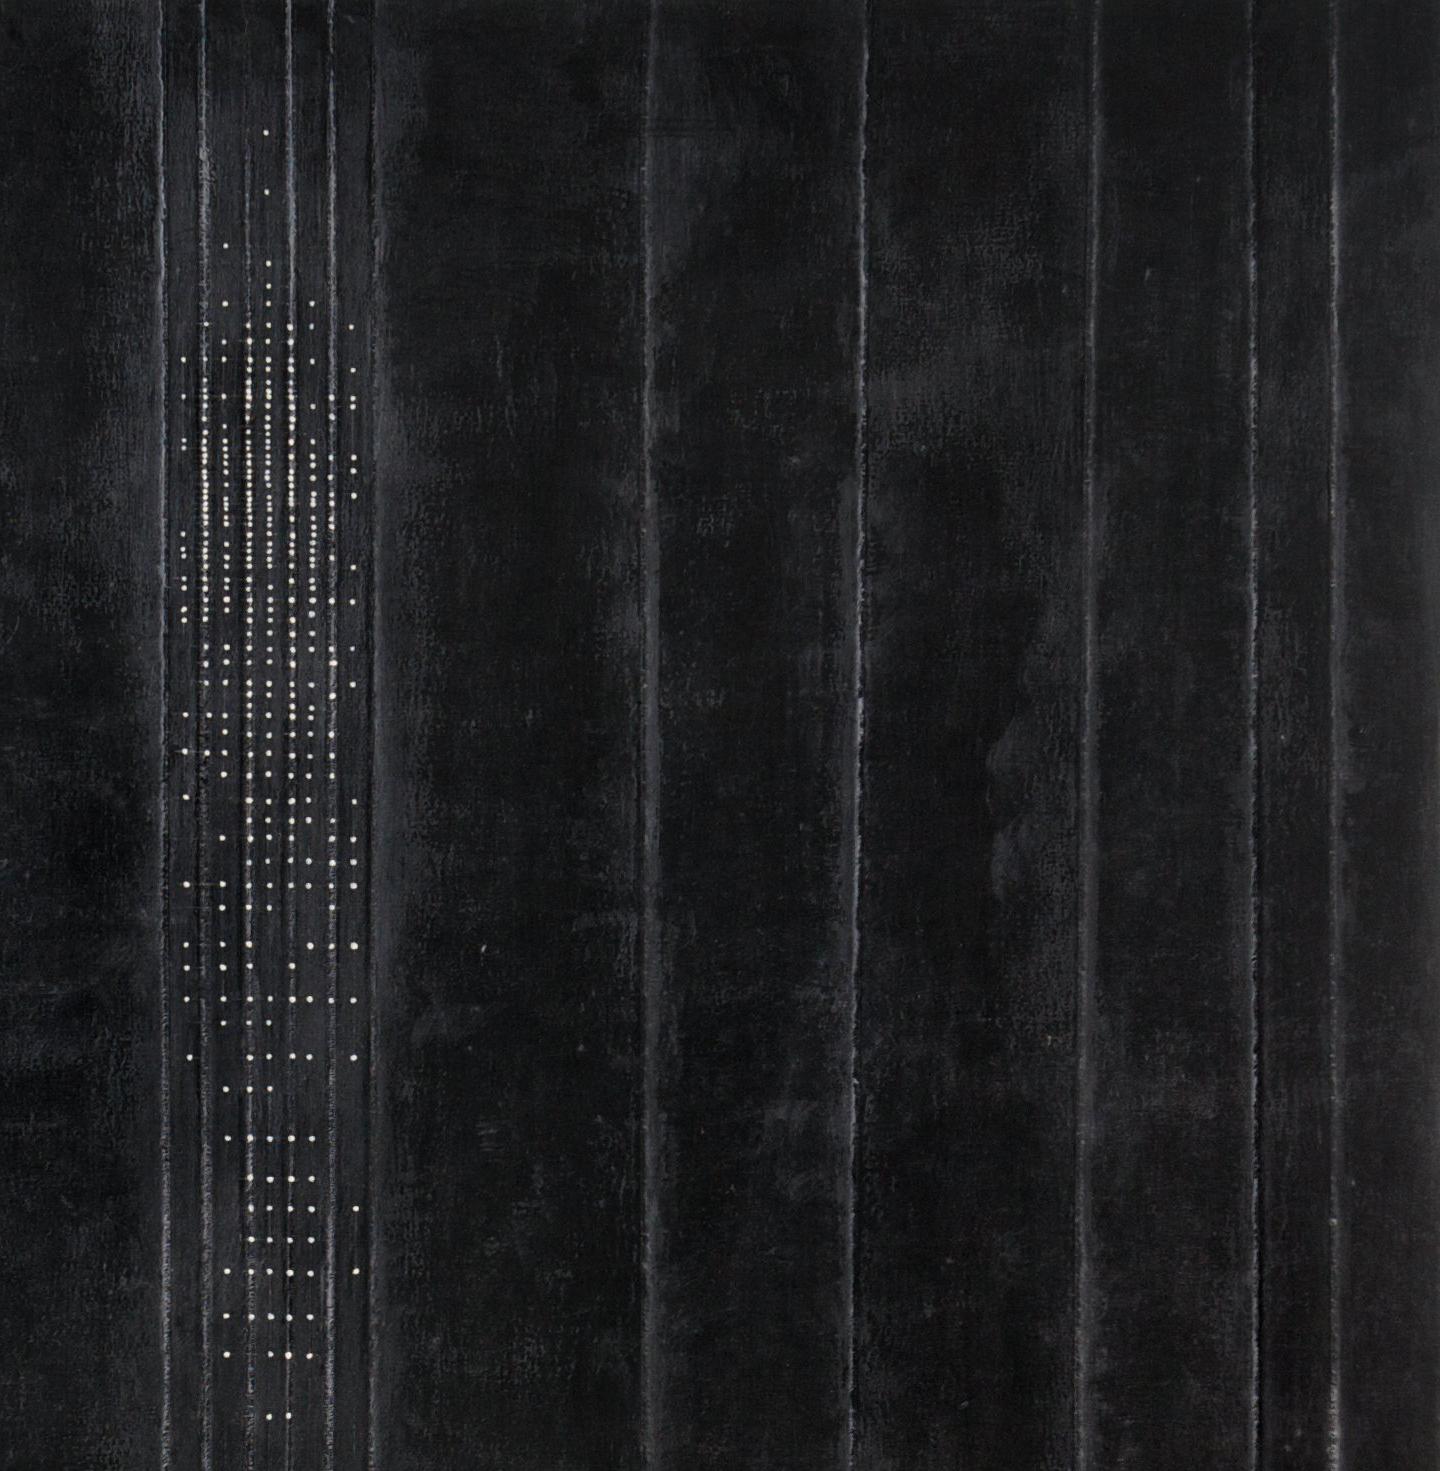 öl und Wachs auf geschichteter Leinwand

Der neoromantische Maler Hiro Yokose verschmilzt mehrere Schichten aus Wachs und Ölfarbe zu geheimnisvollen, verschleierten Landschaften, die von Lichtblitzen am Himmel und Spiegelungen auf dem Wasser